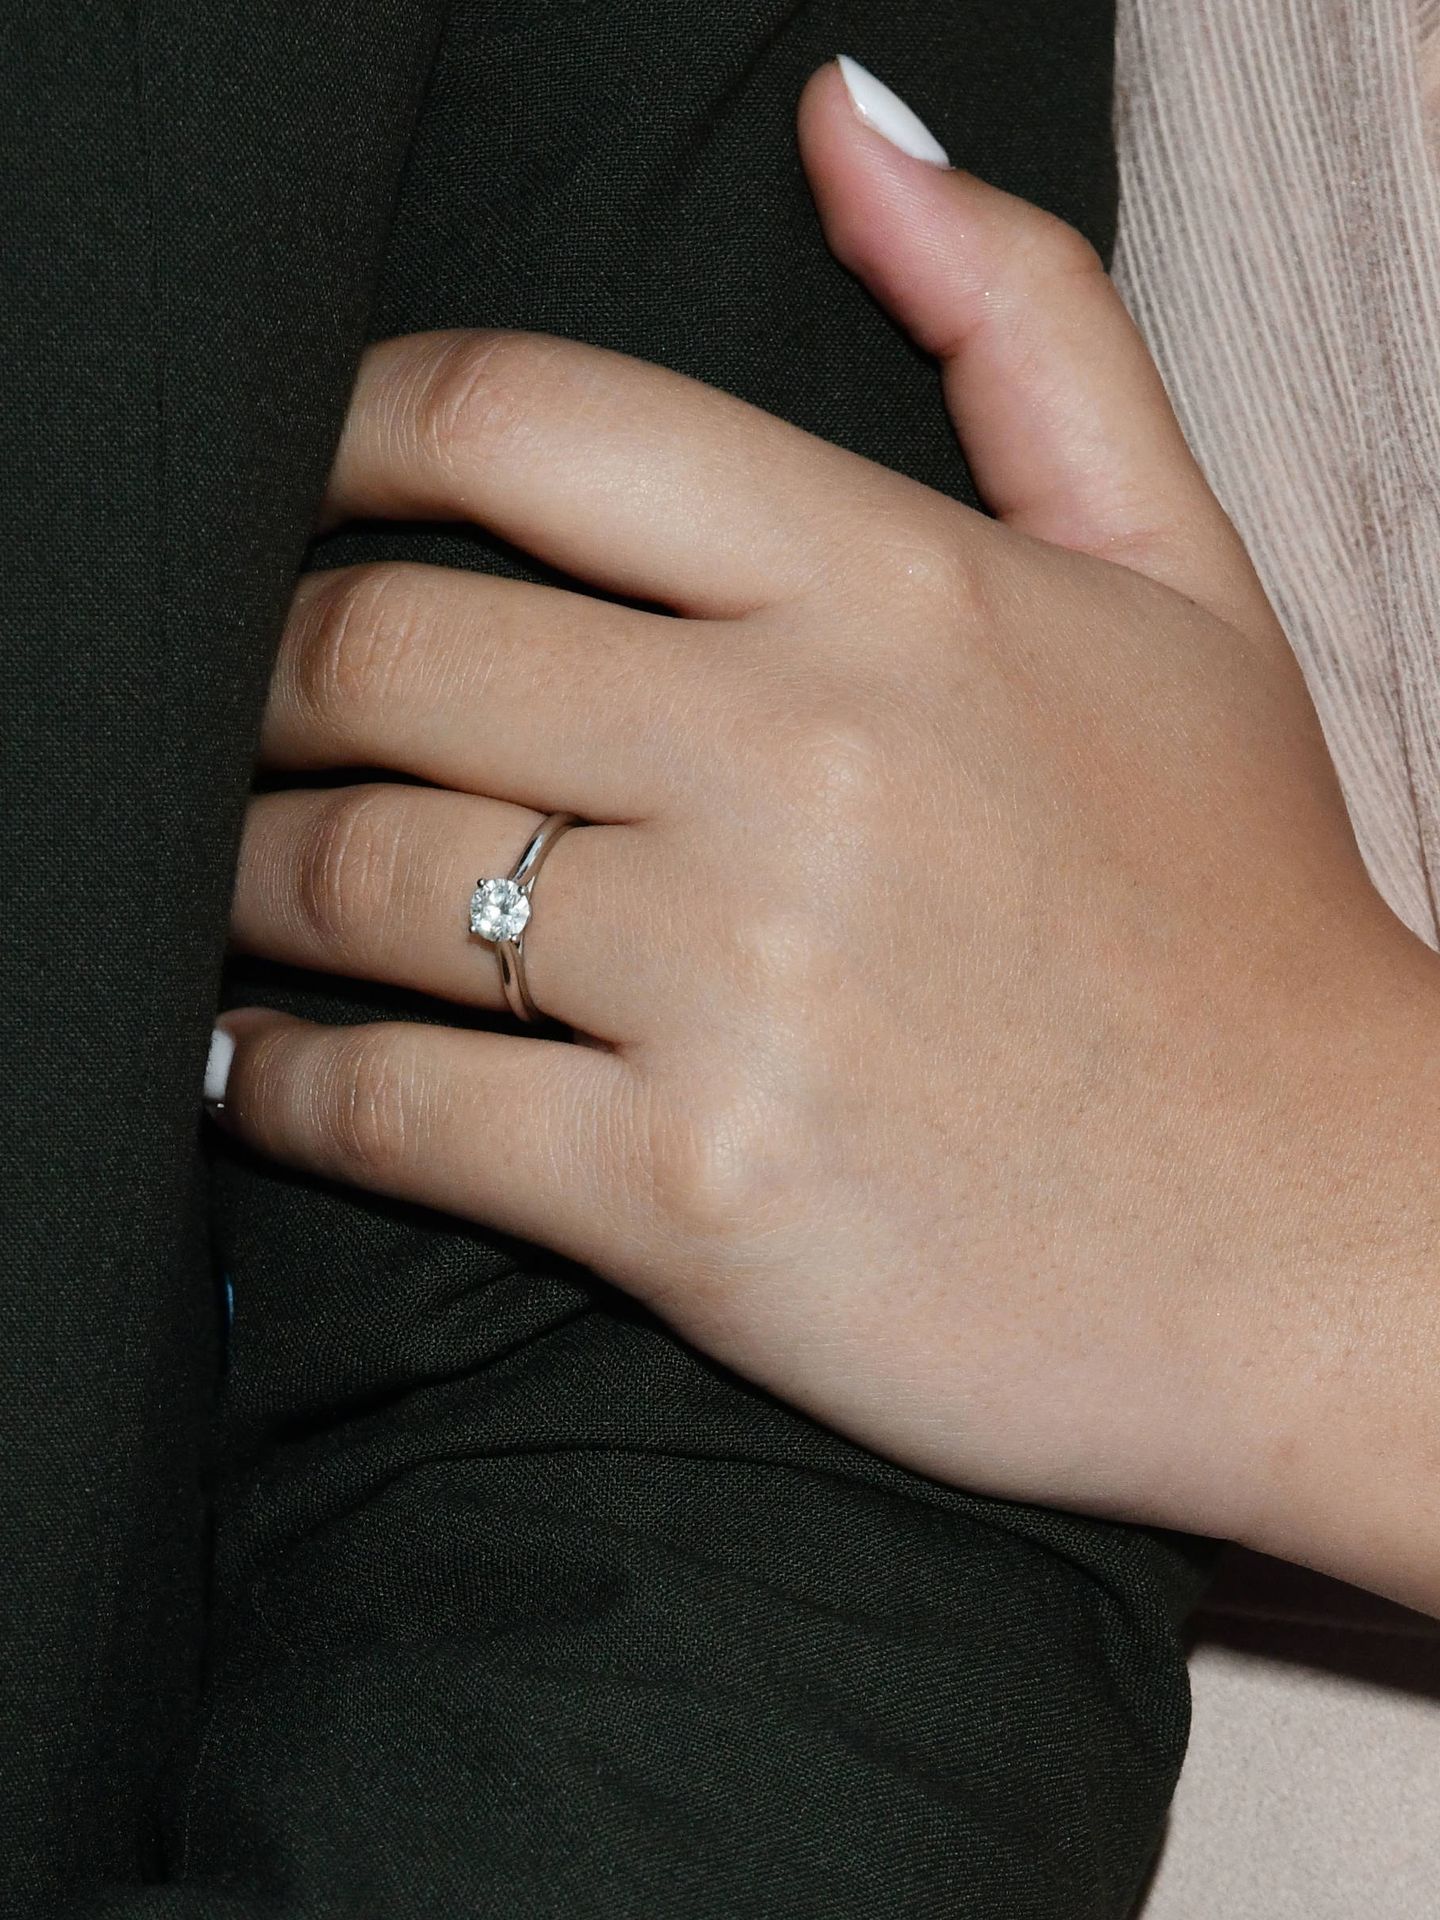 El anillo de compromiso es un solitario con un diamante. (Gtres)